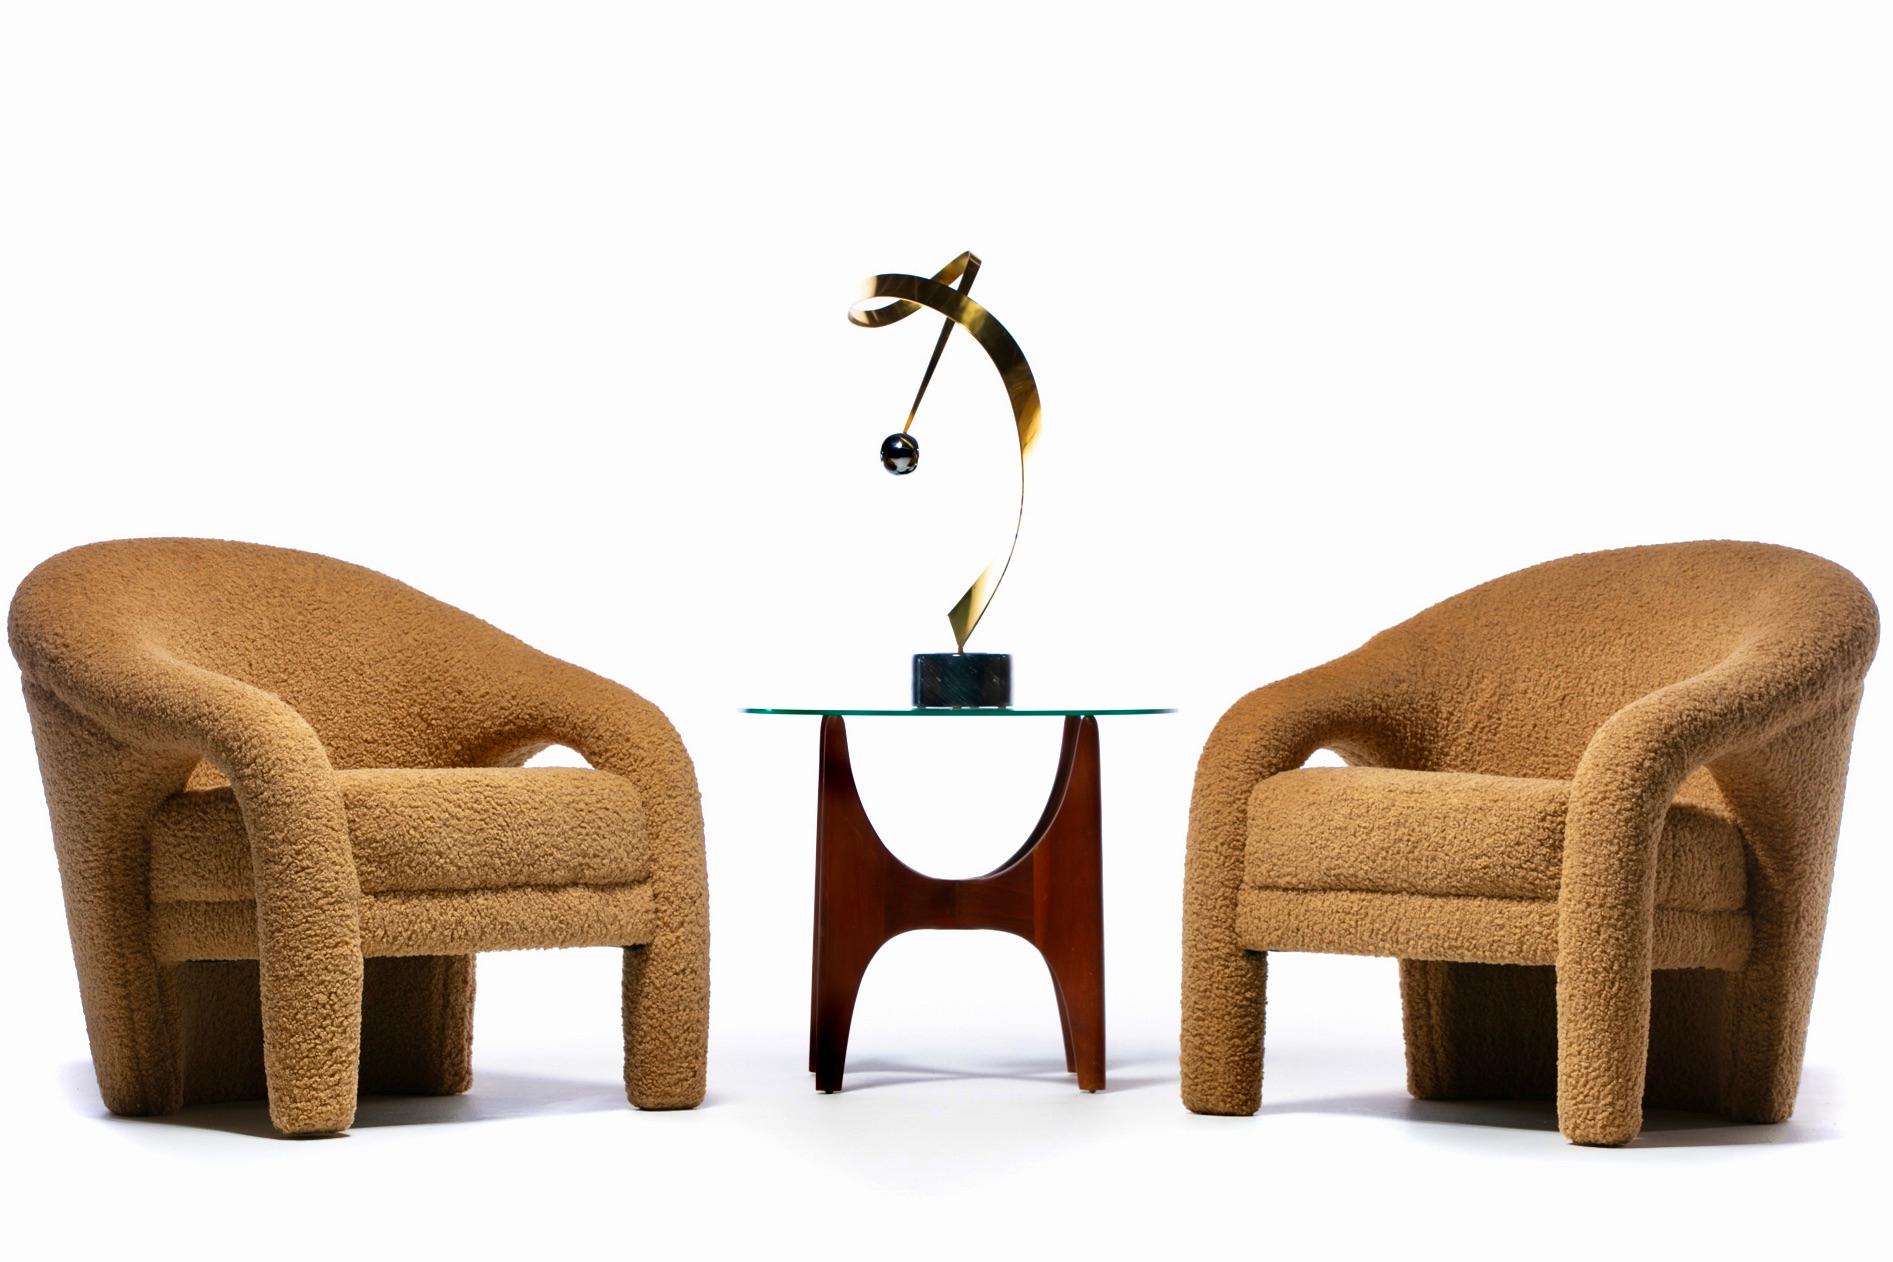 Hüllen Sie sich in plüschigen, luxuriösen Komfort in diesen modernen Weiman Lounge Chairs mit umhüllenden, gepolsterten Rückenlehnen und abfallenden, dick gepolsterten Armlehnen, die frisch und professionell mit superweichem Latte Bouclé gepolstert